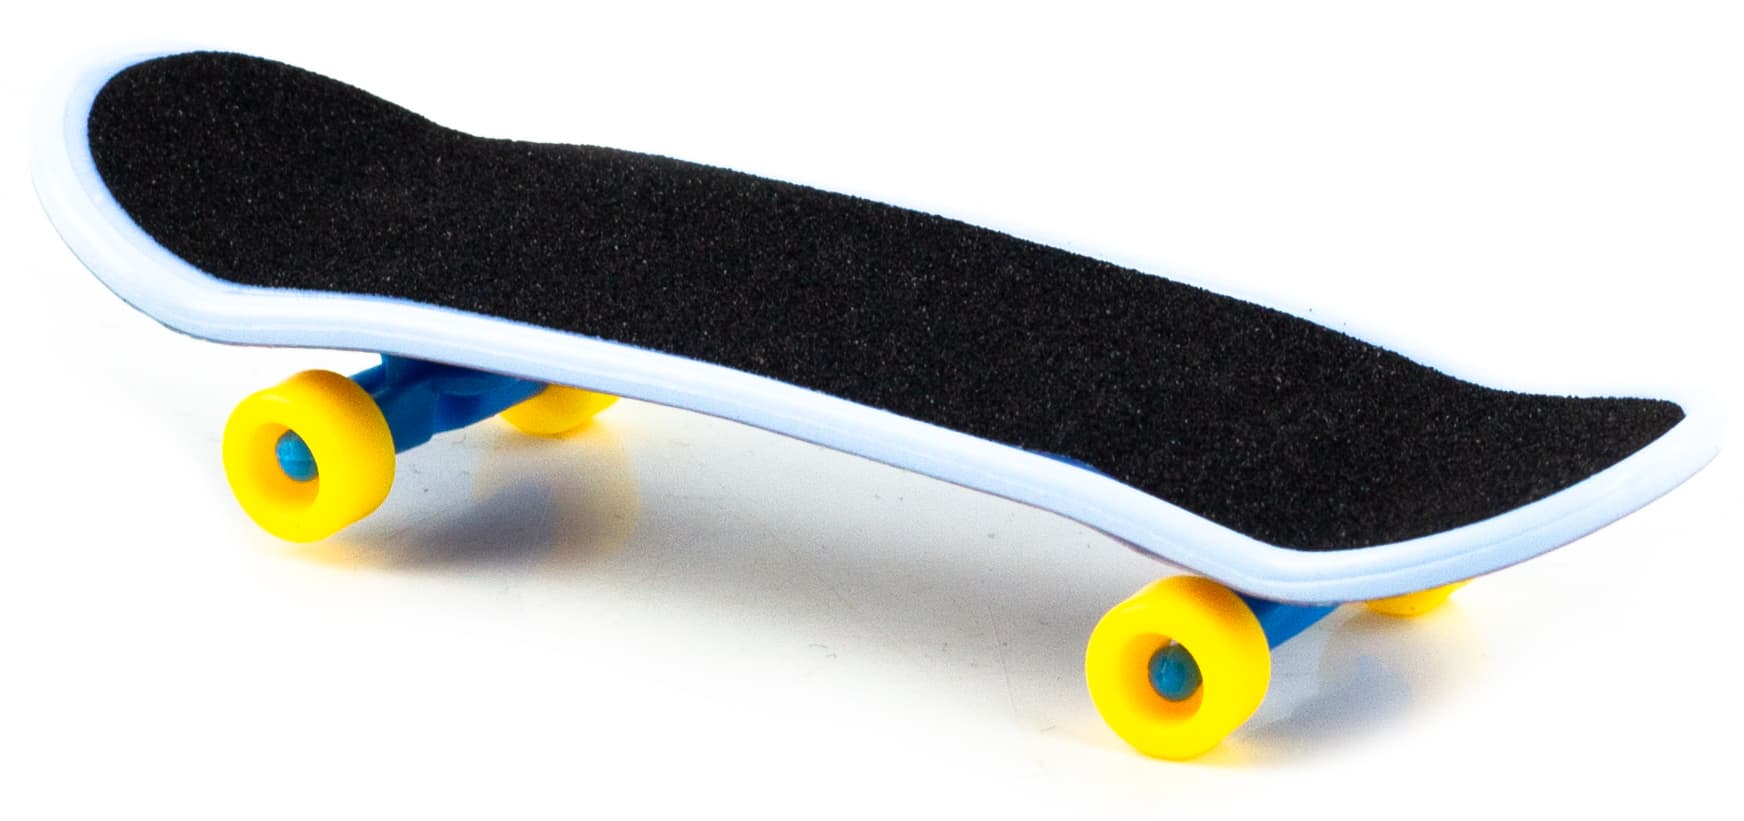 Пальчиковый скейт «Фингерборд» 9,5 см. BX-288C